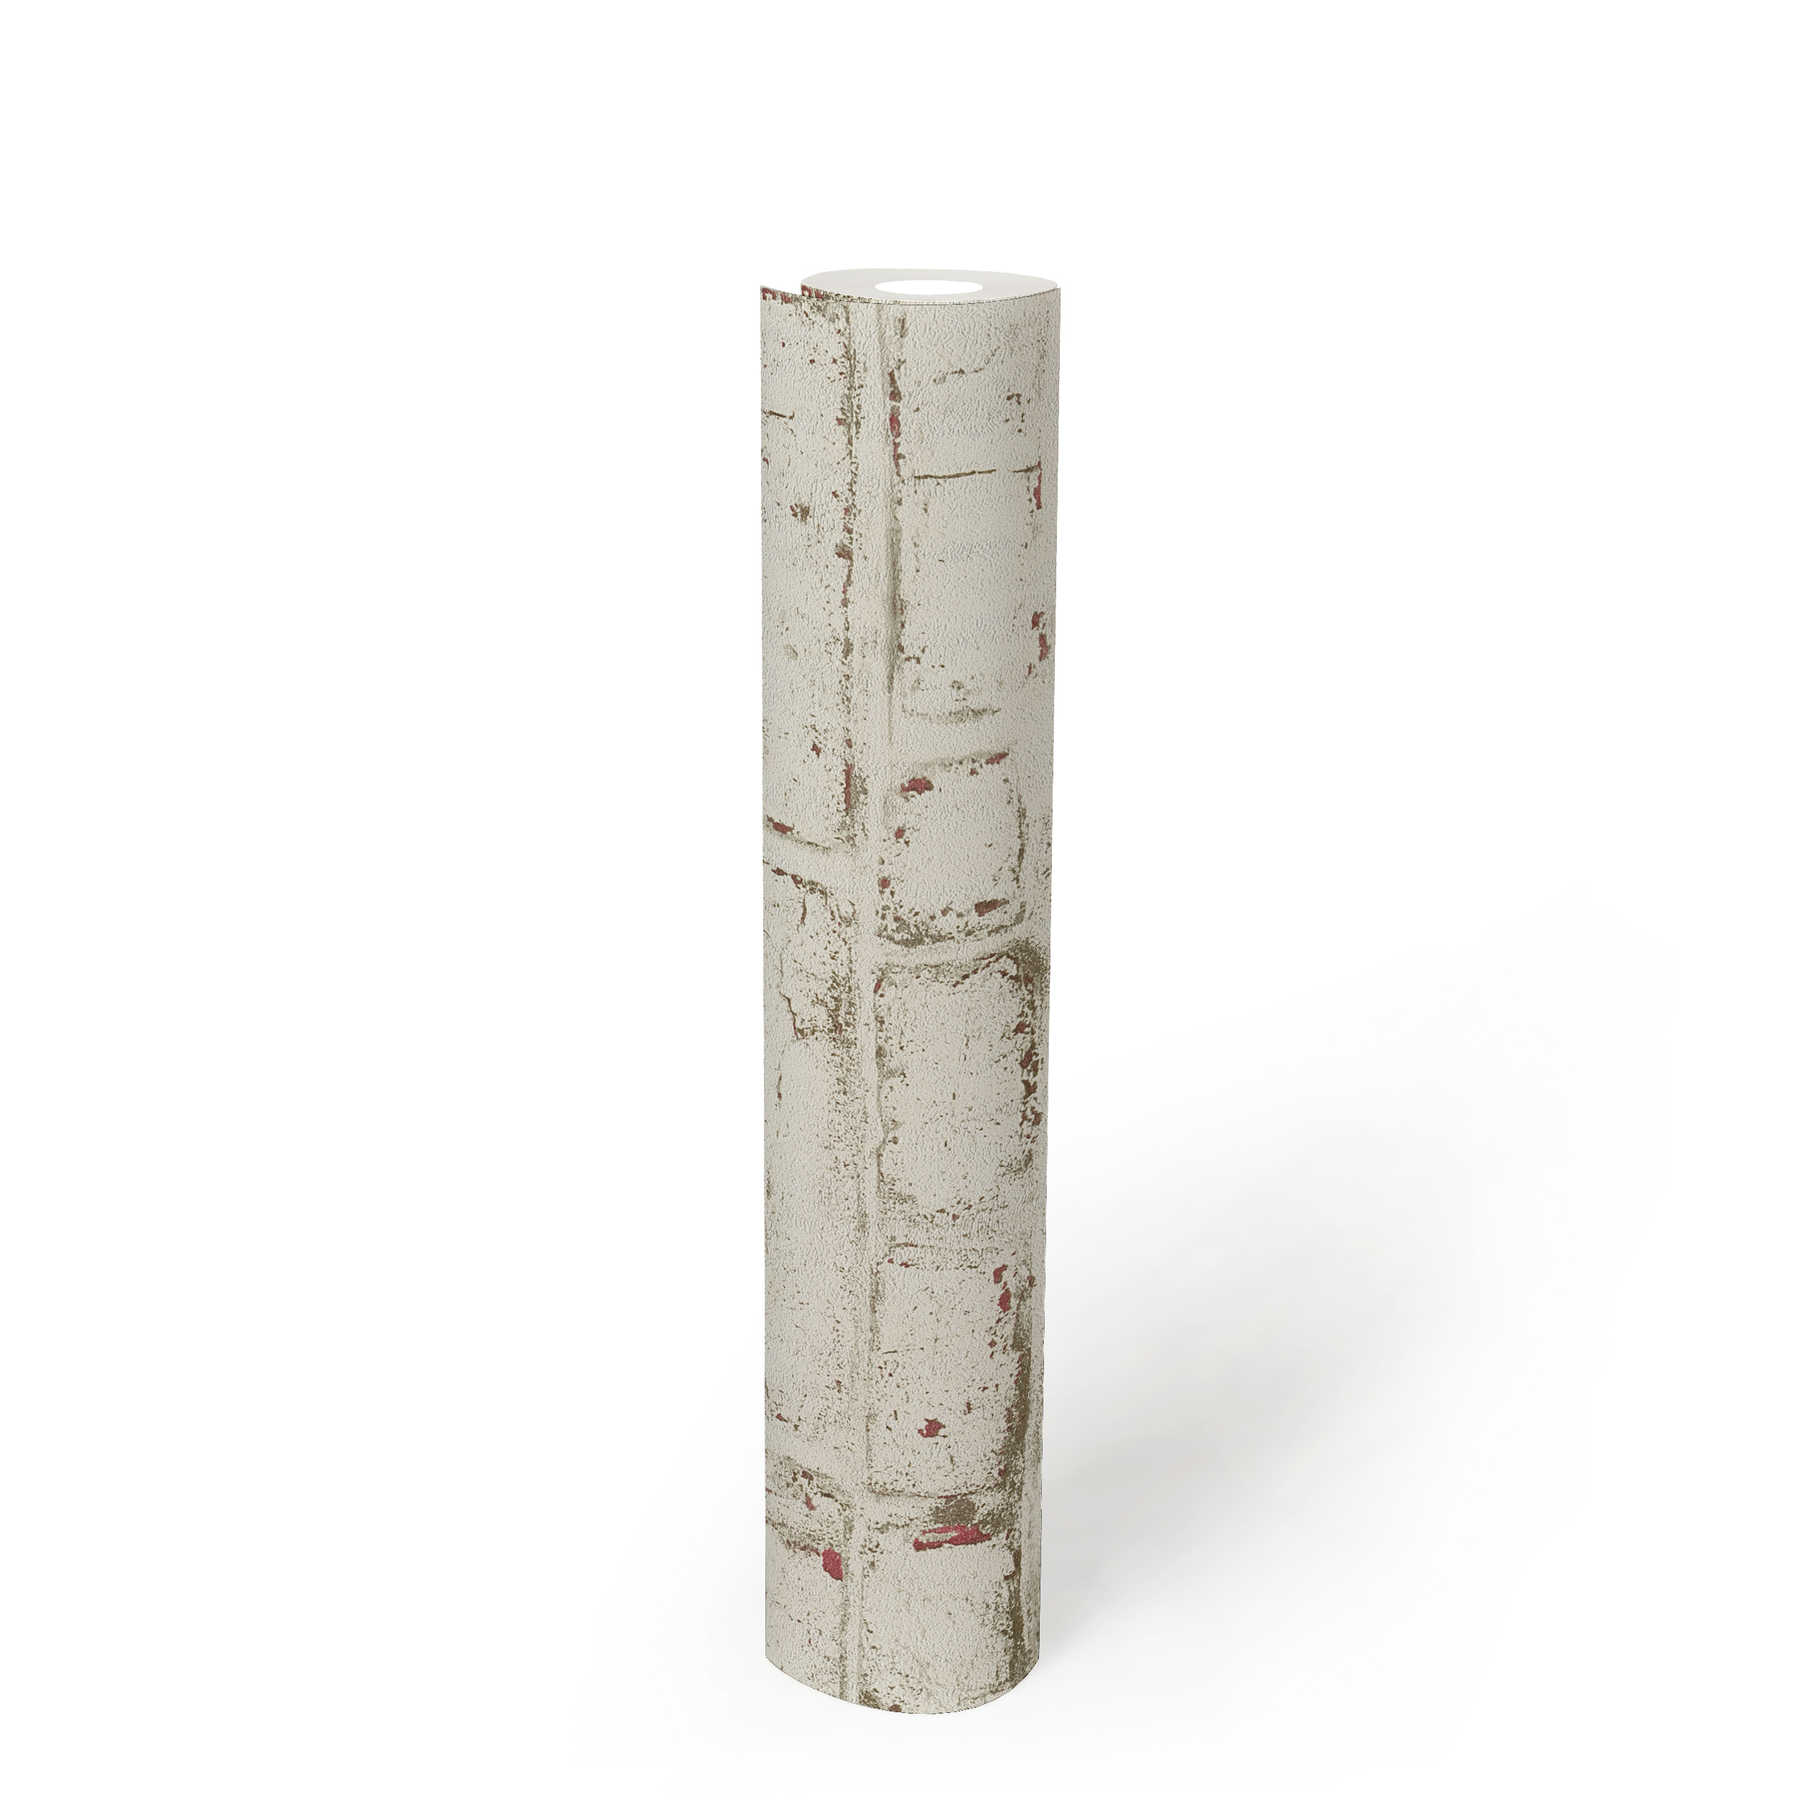             Steinoptik Tapete mit weißem Backstein im Vintage Look – Weiß, Rot, Beige
        